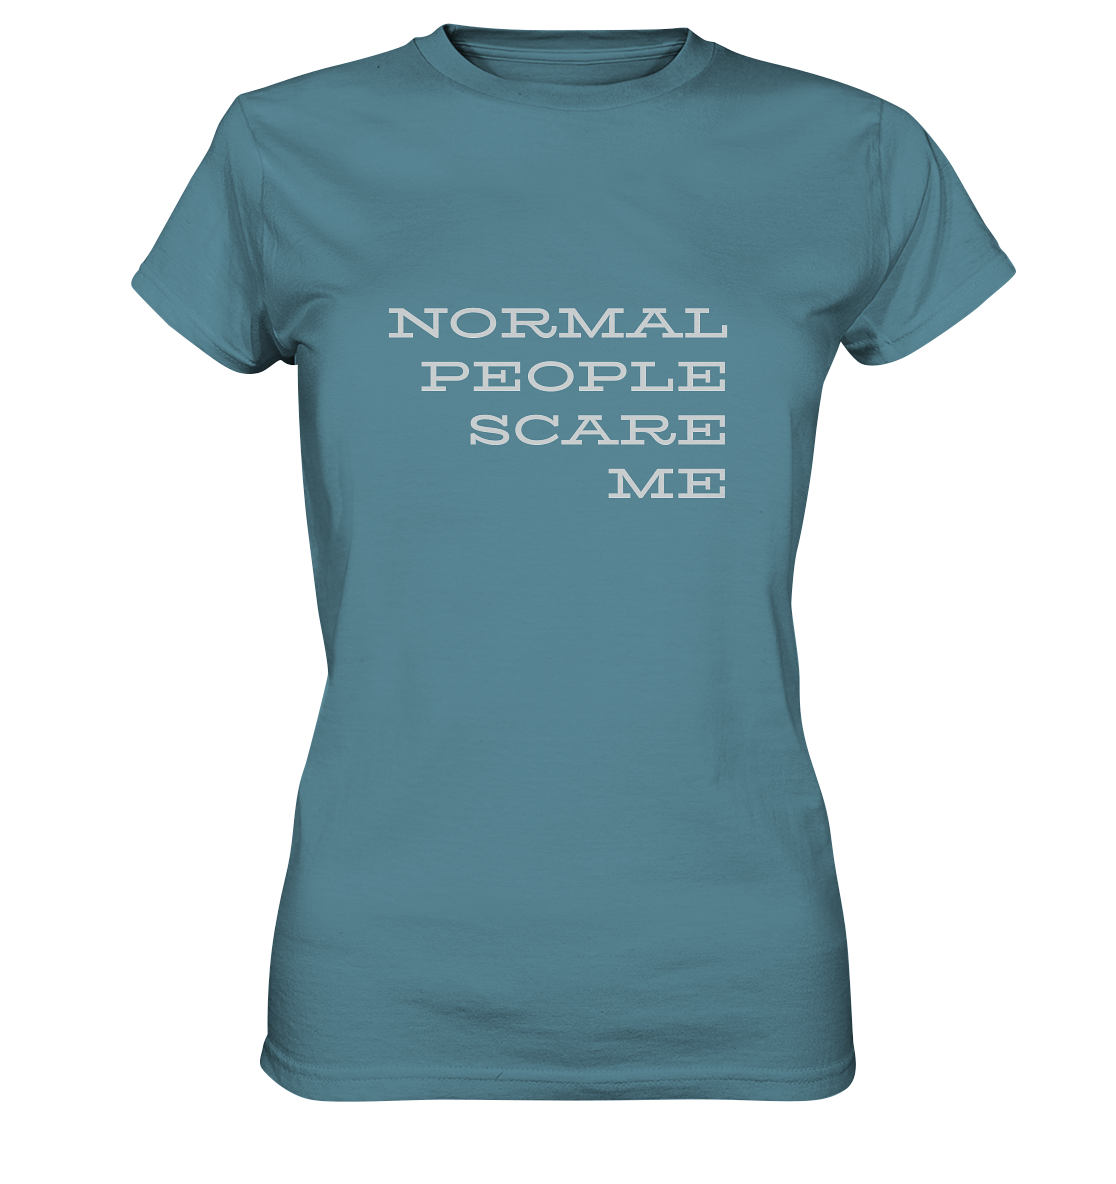 Damen-T-Shirt mit Aufdruck "Normal people scare me", hell blau